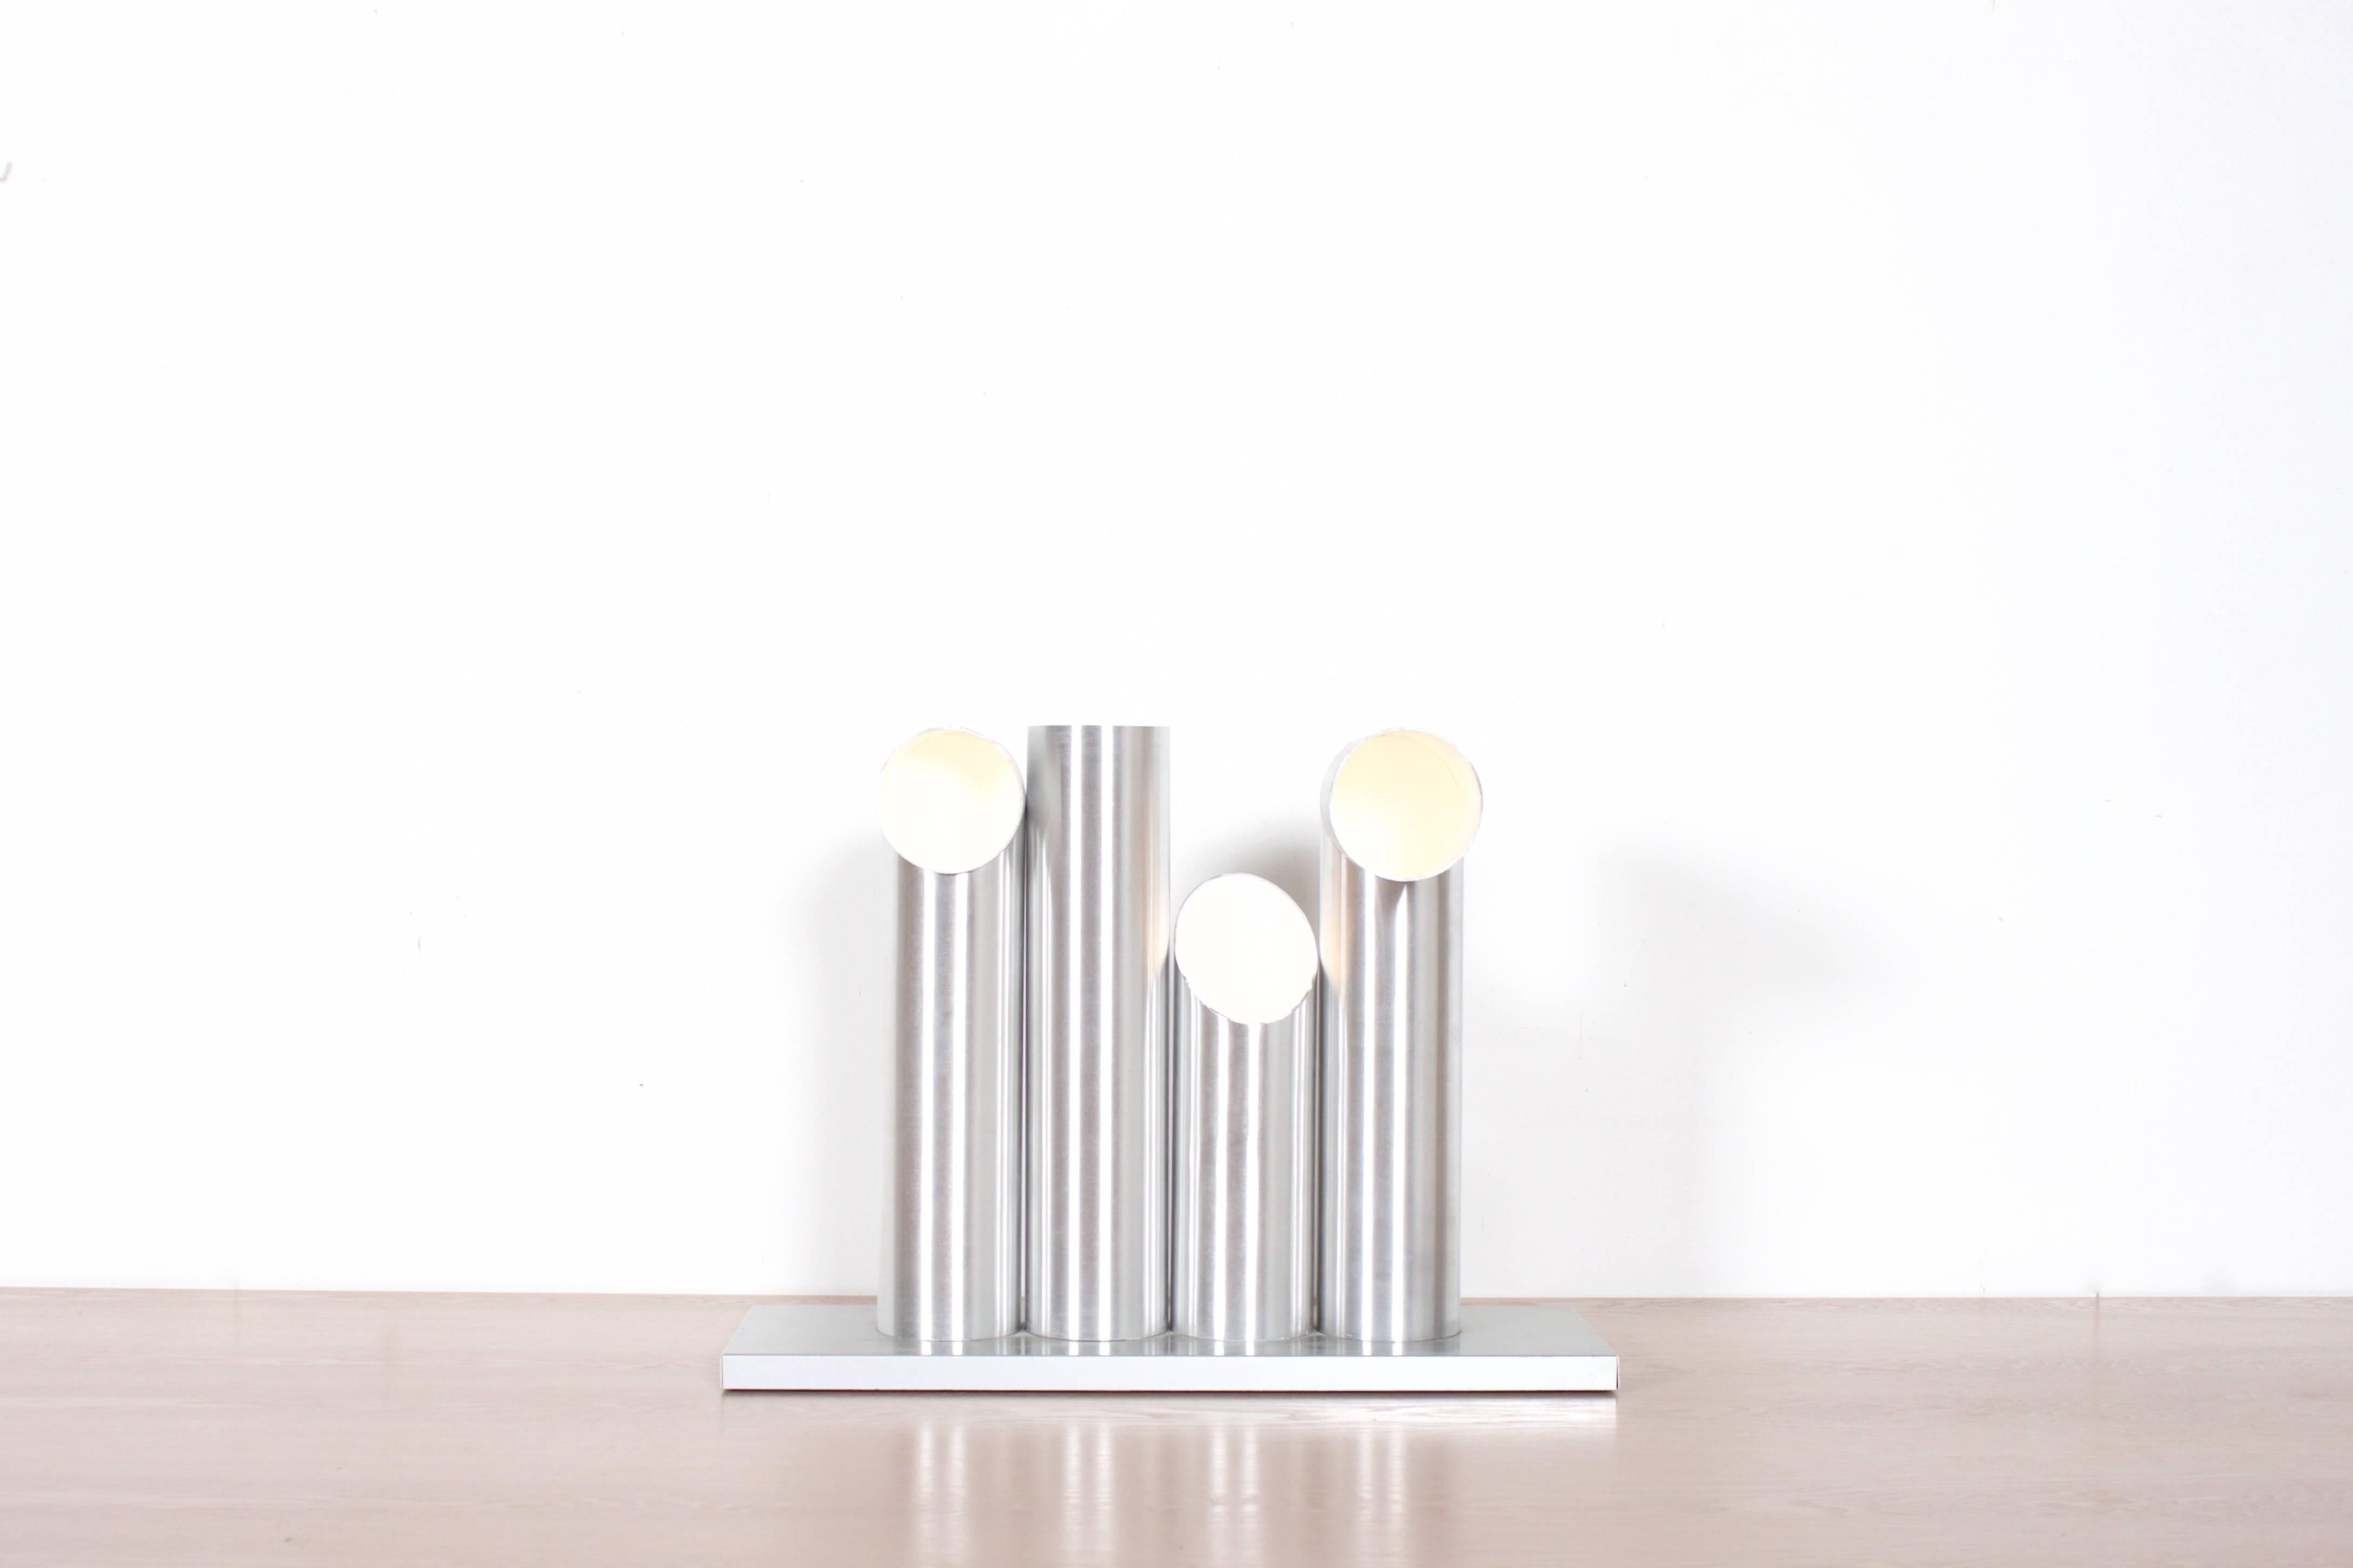 Très rare lampadaire de table RAAK 'Light Sculpture' en très bon état.

La lampe se compose de quatre tubes en aluminium anodisé, ils ont tous une forme différente et peuvent être échangés entre eux dans des combinaisons infinies.

La lampe contient